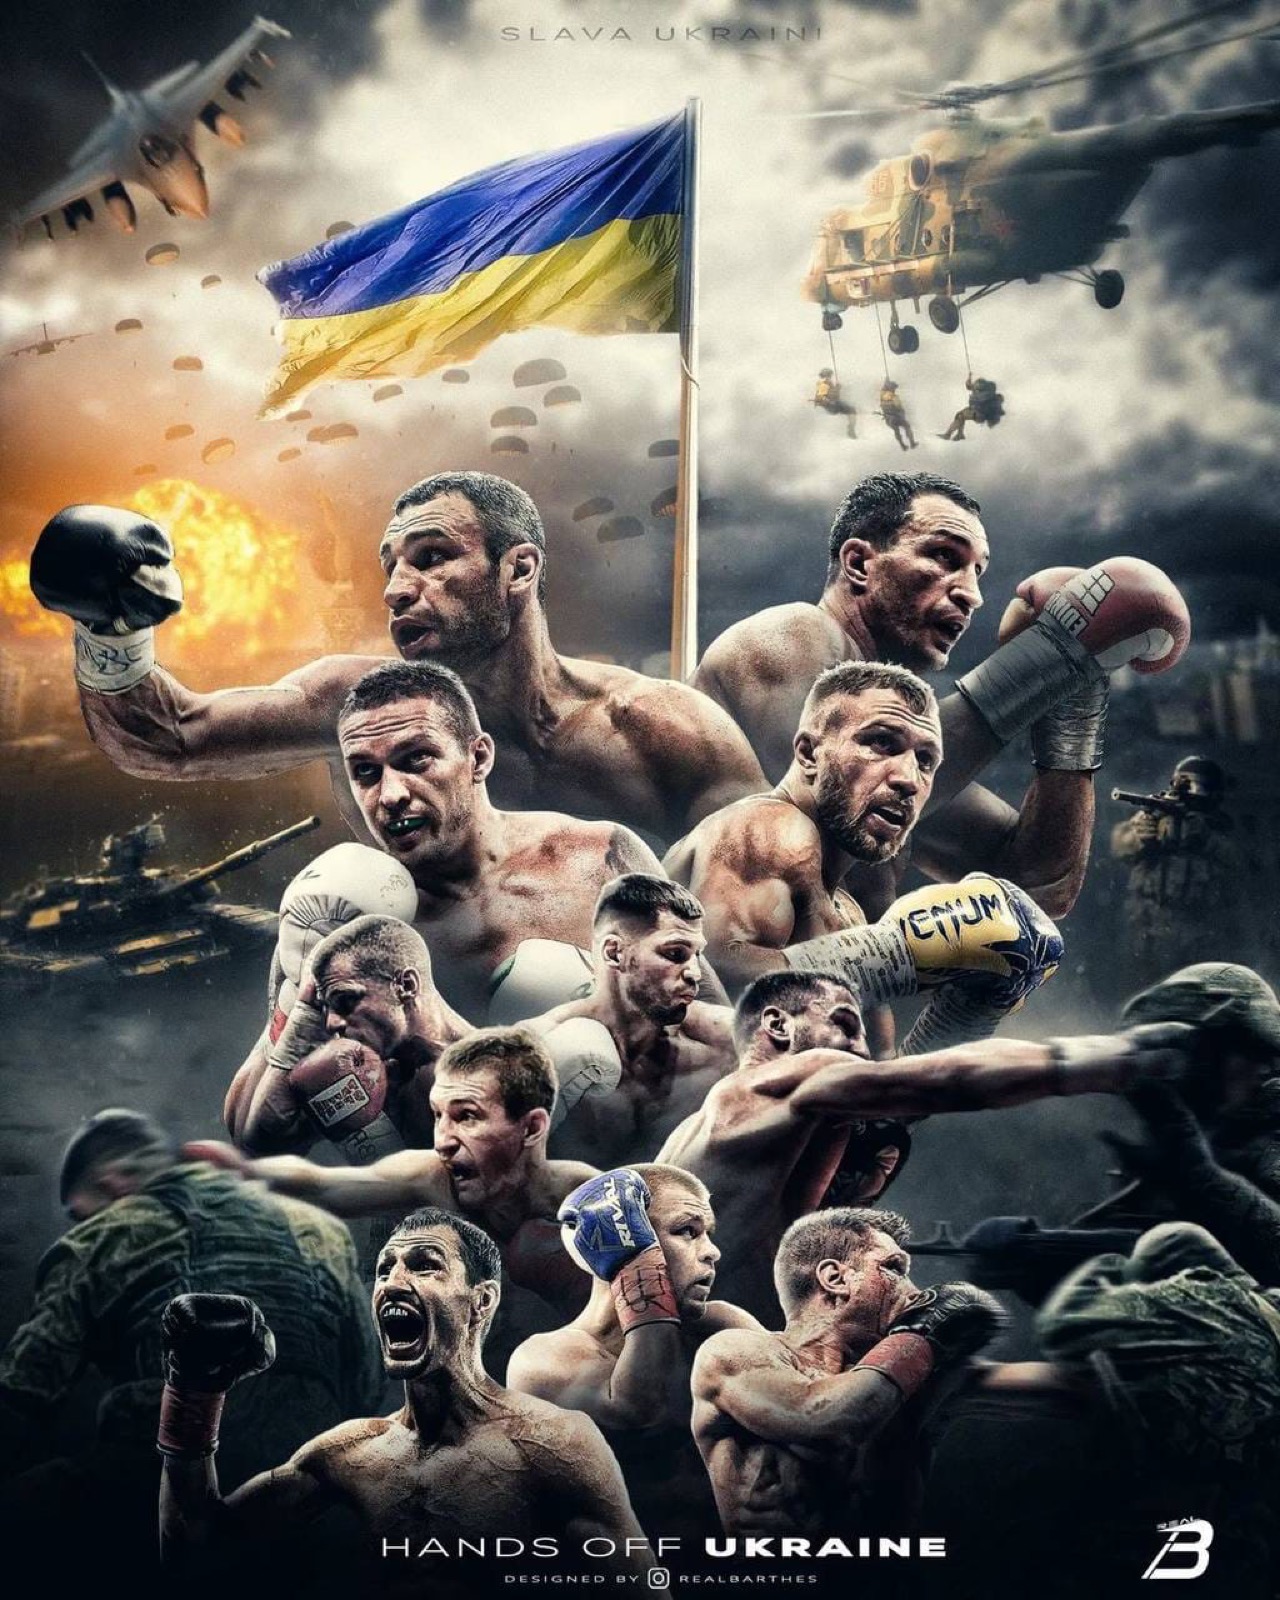 Vasiliy Lomachenko boxing image / photo